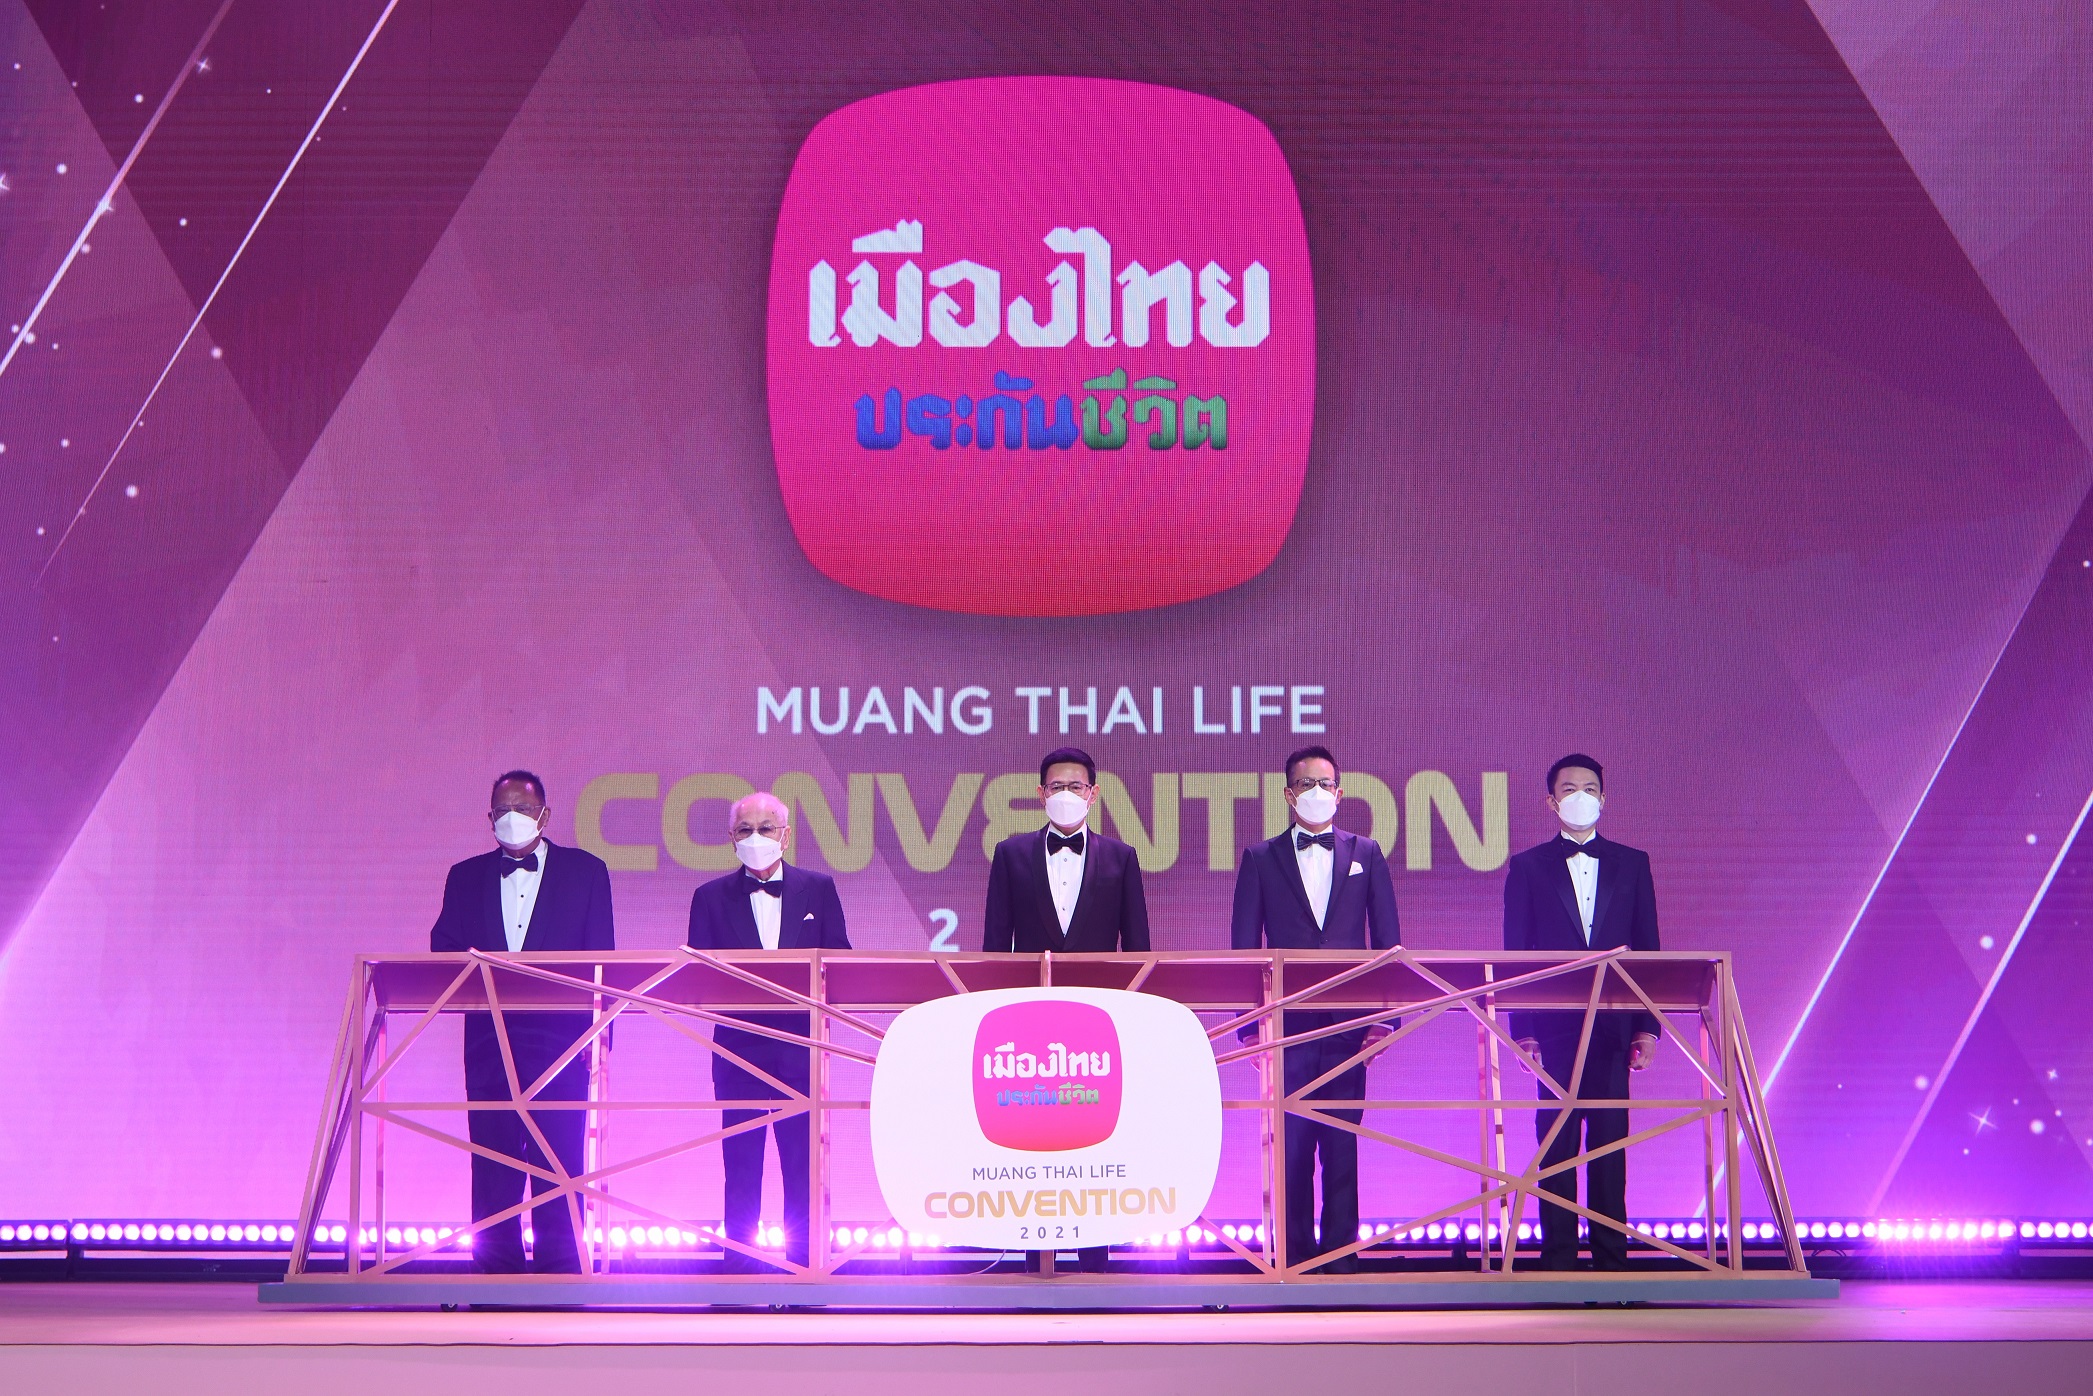 เมืองไทยประกันชีวิต จัดพิธีมอบรางวัลเกียรติยศ “MUANG THAI LIFE CONVENTION 2021”